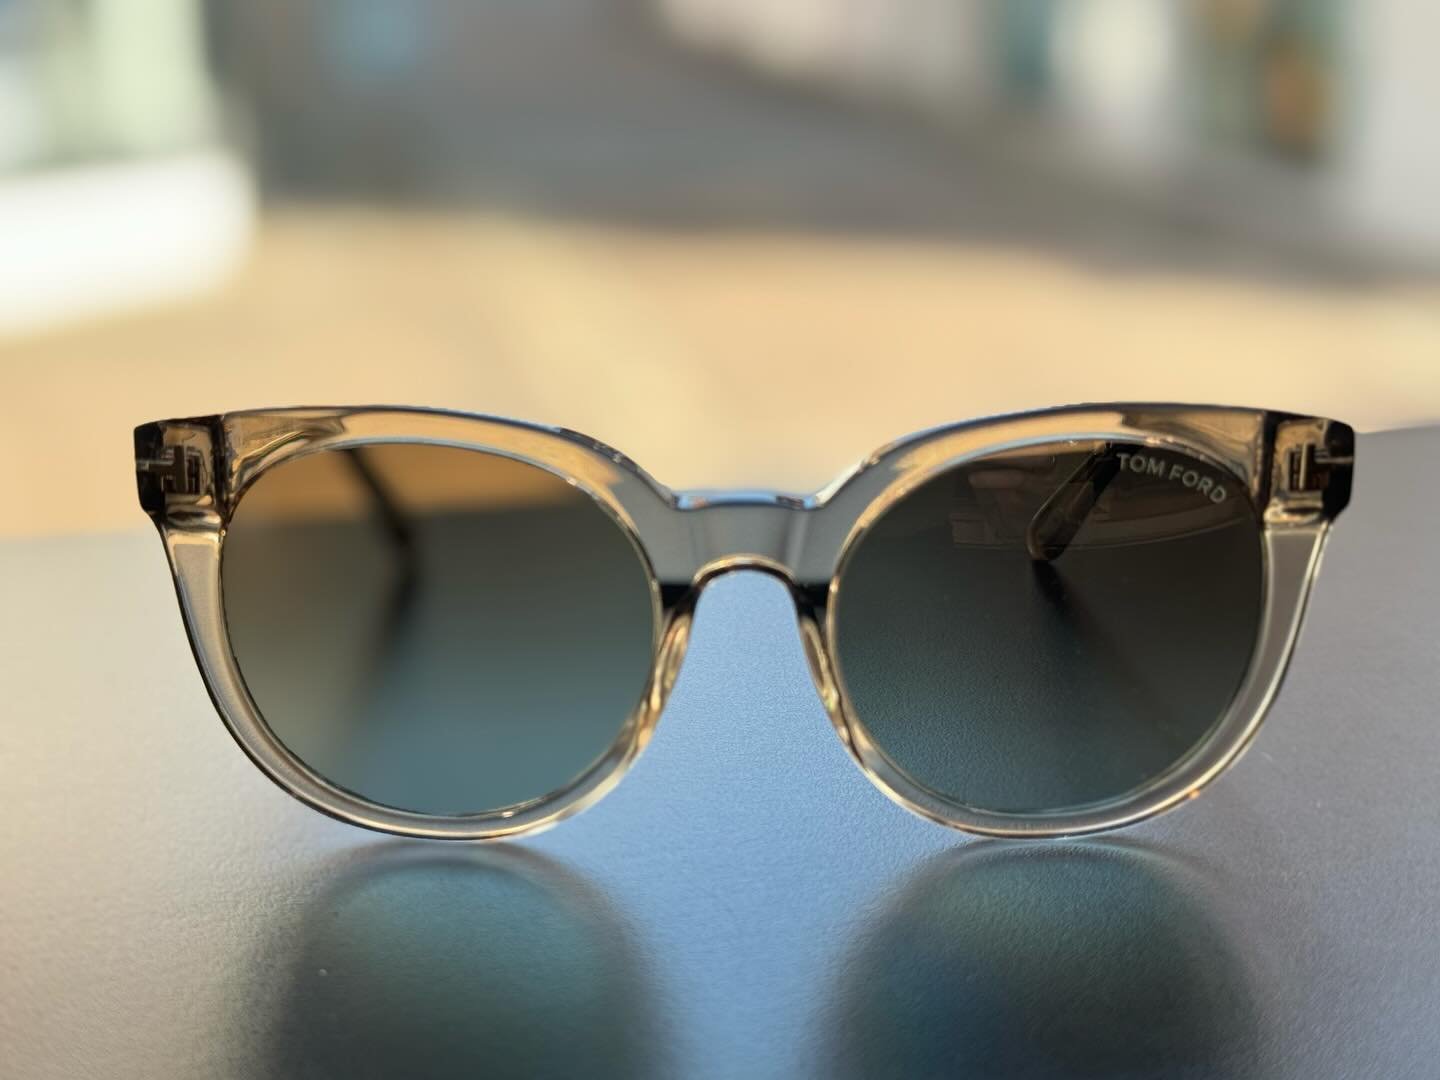 Vejrudsigten siger solskin i Thy 😎

Butikken er fyldt op med nye solbriller fra Gucci, Tom Ford og Ray Ban 💛🏝️